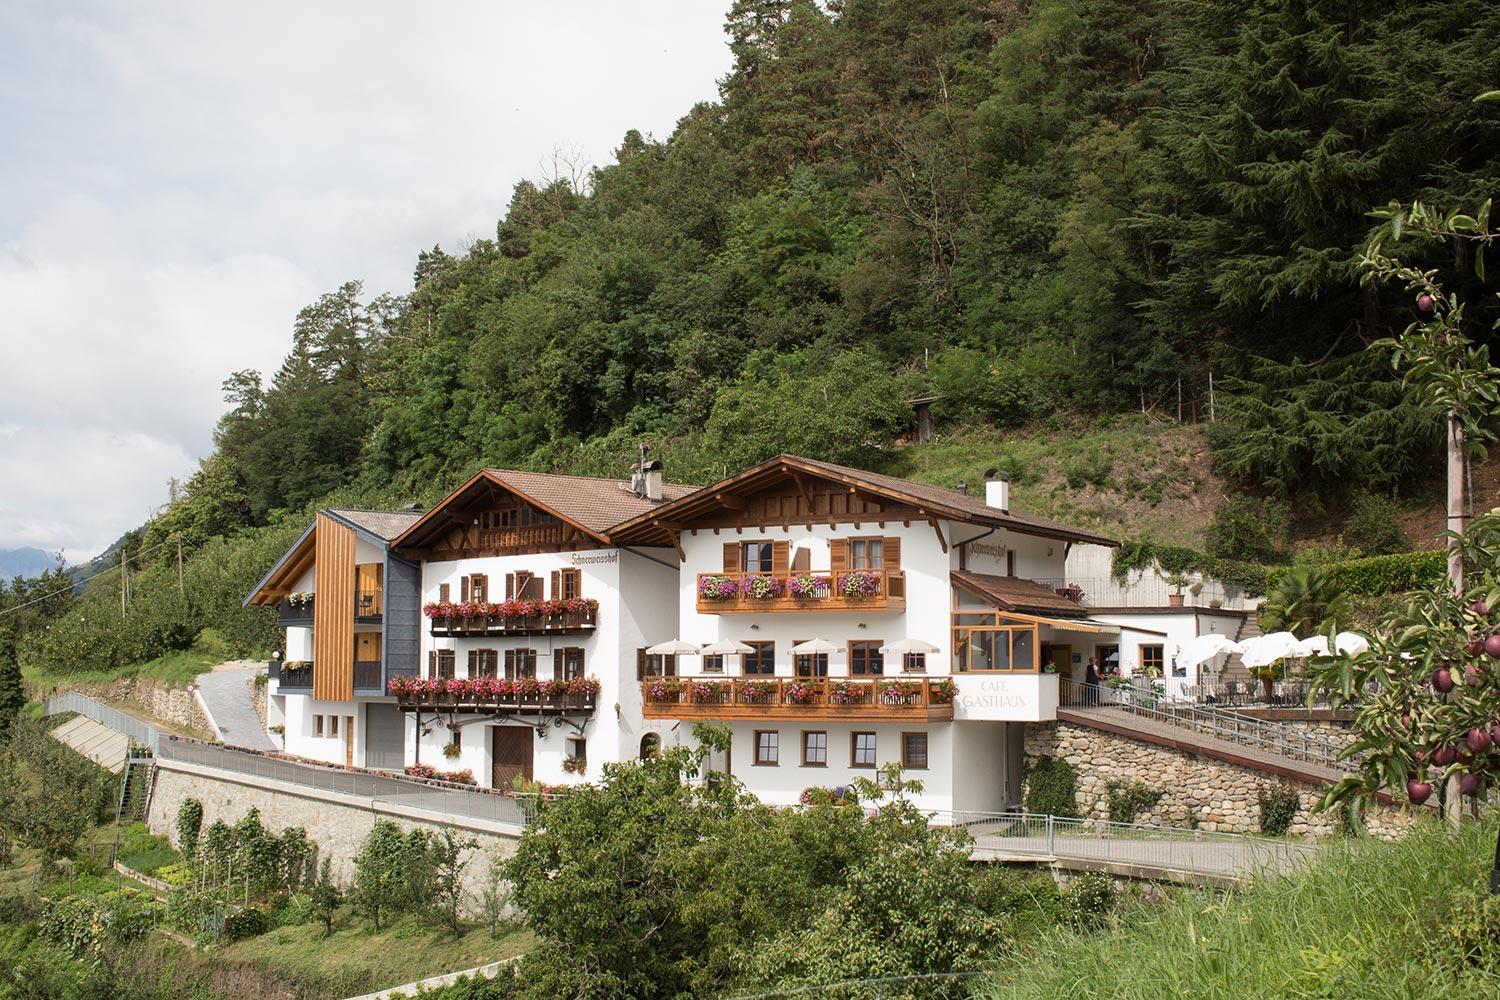 Gasthaus Schneeweisshof in Dorf Tirol bei Meran, Südtirol